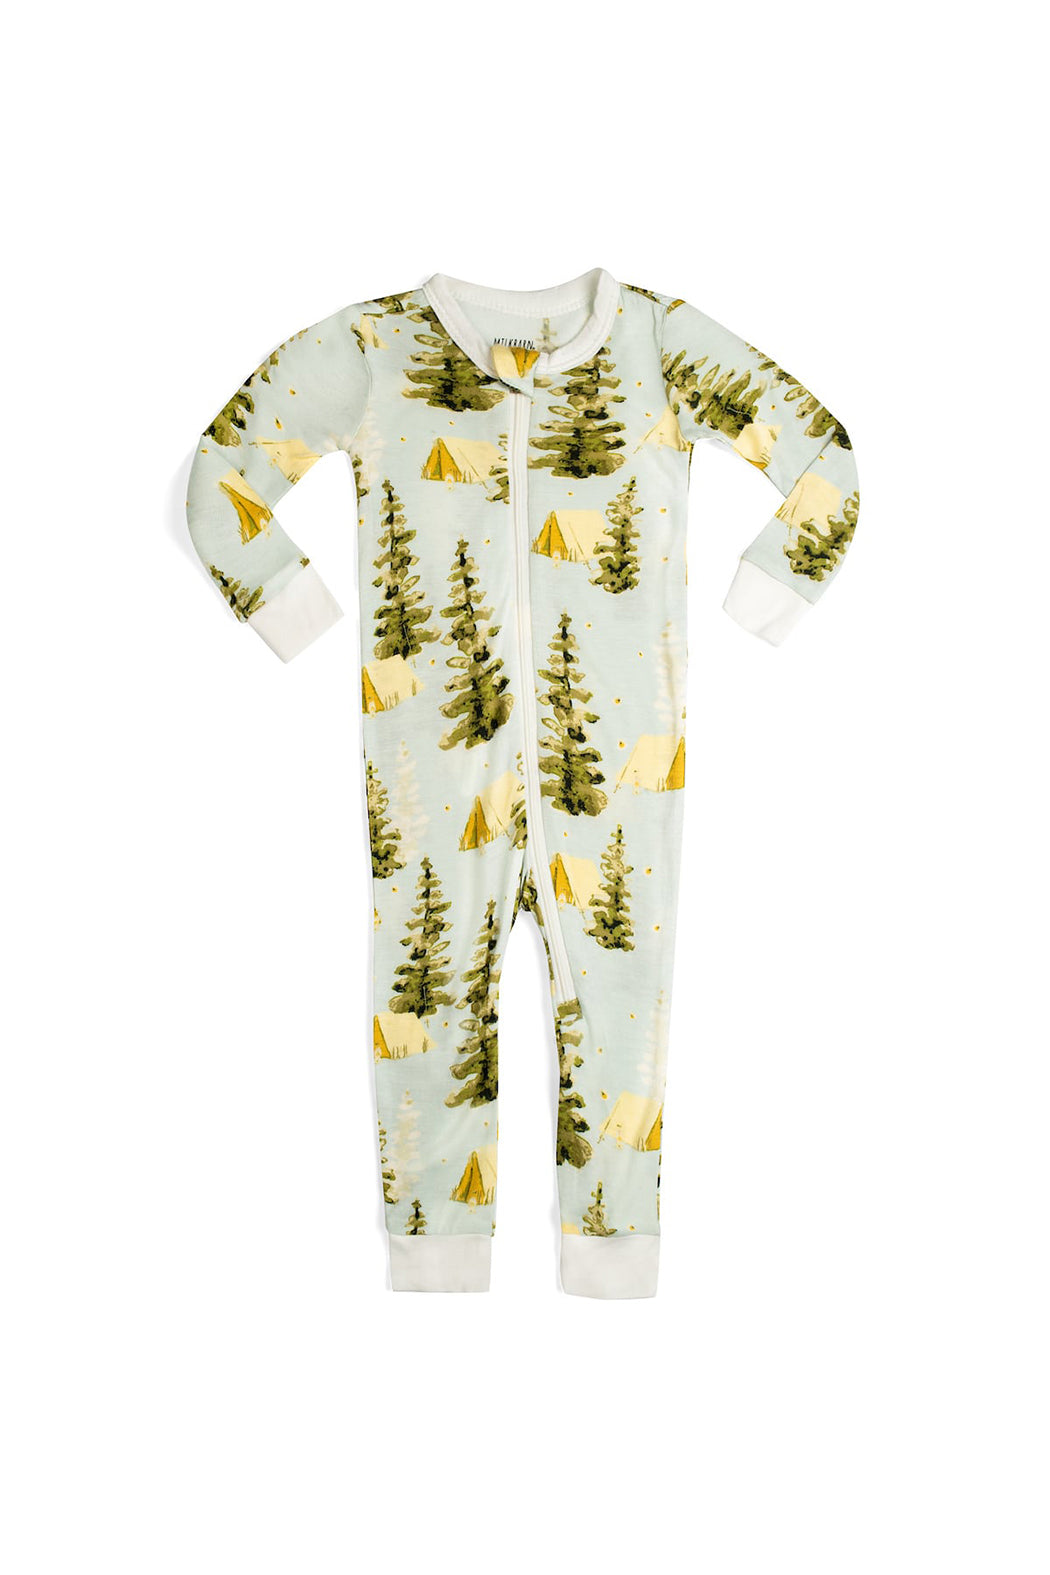 Milkbarn Bamboo Zipper Pajamas - Camping